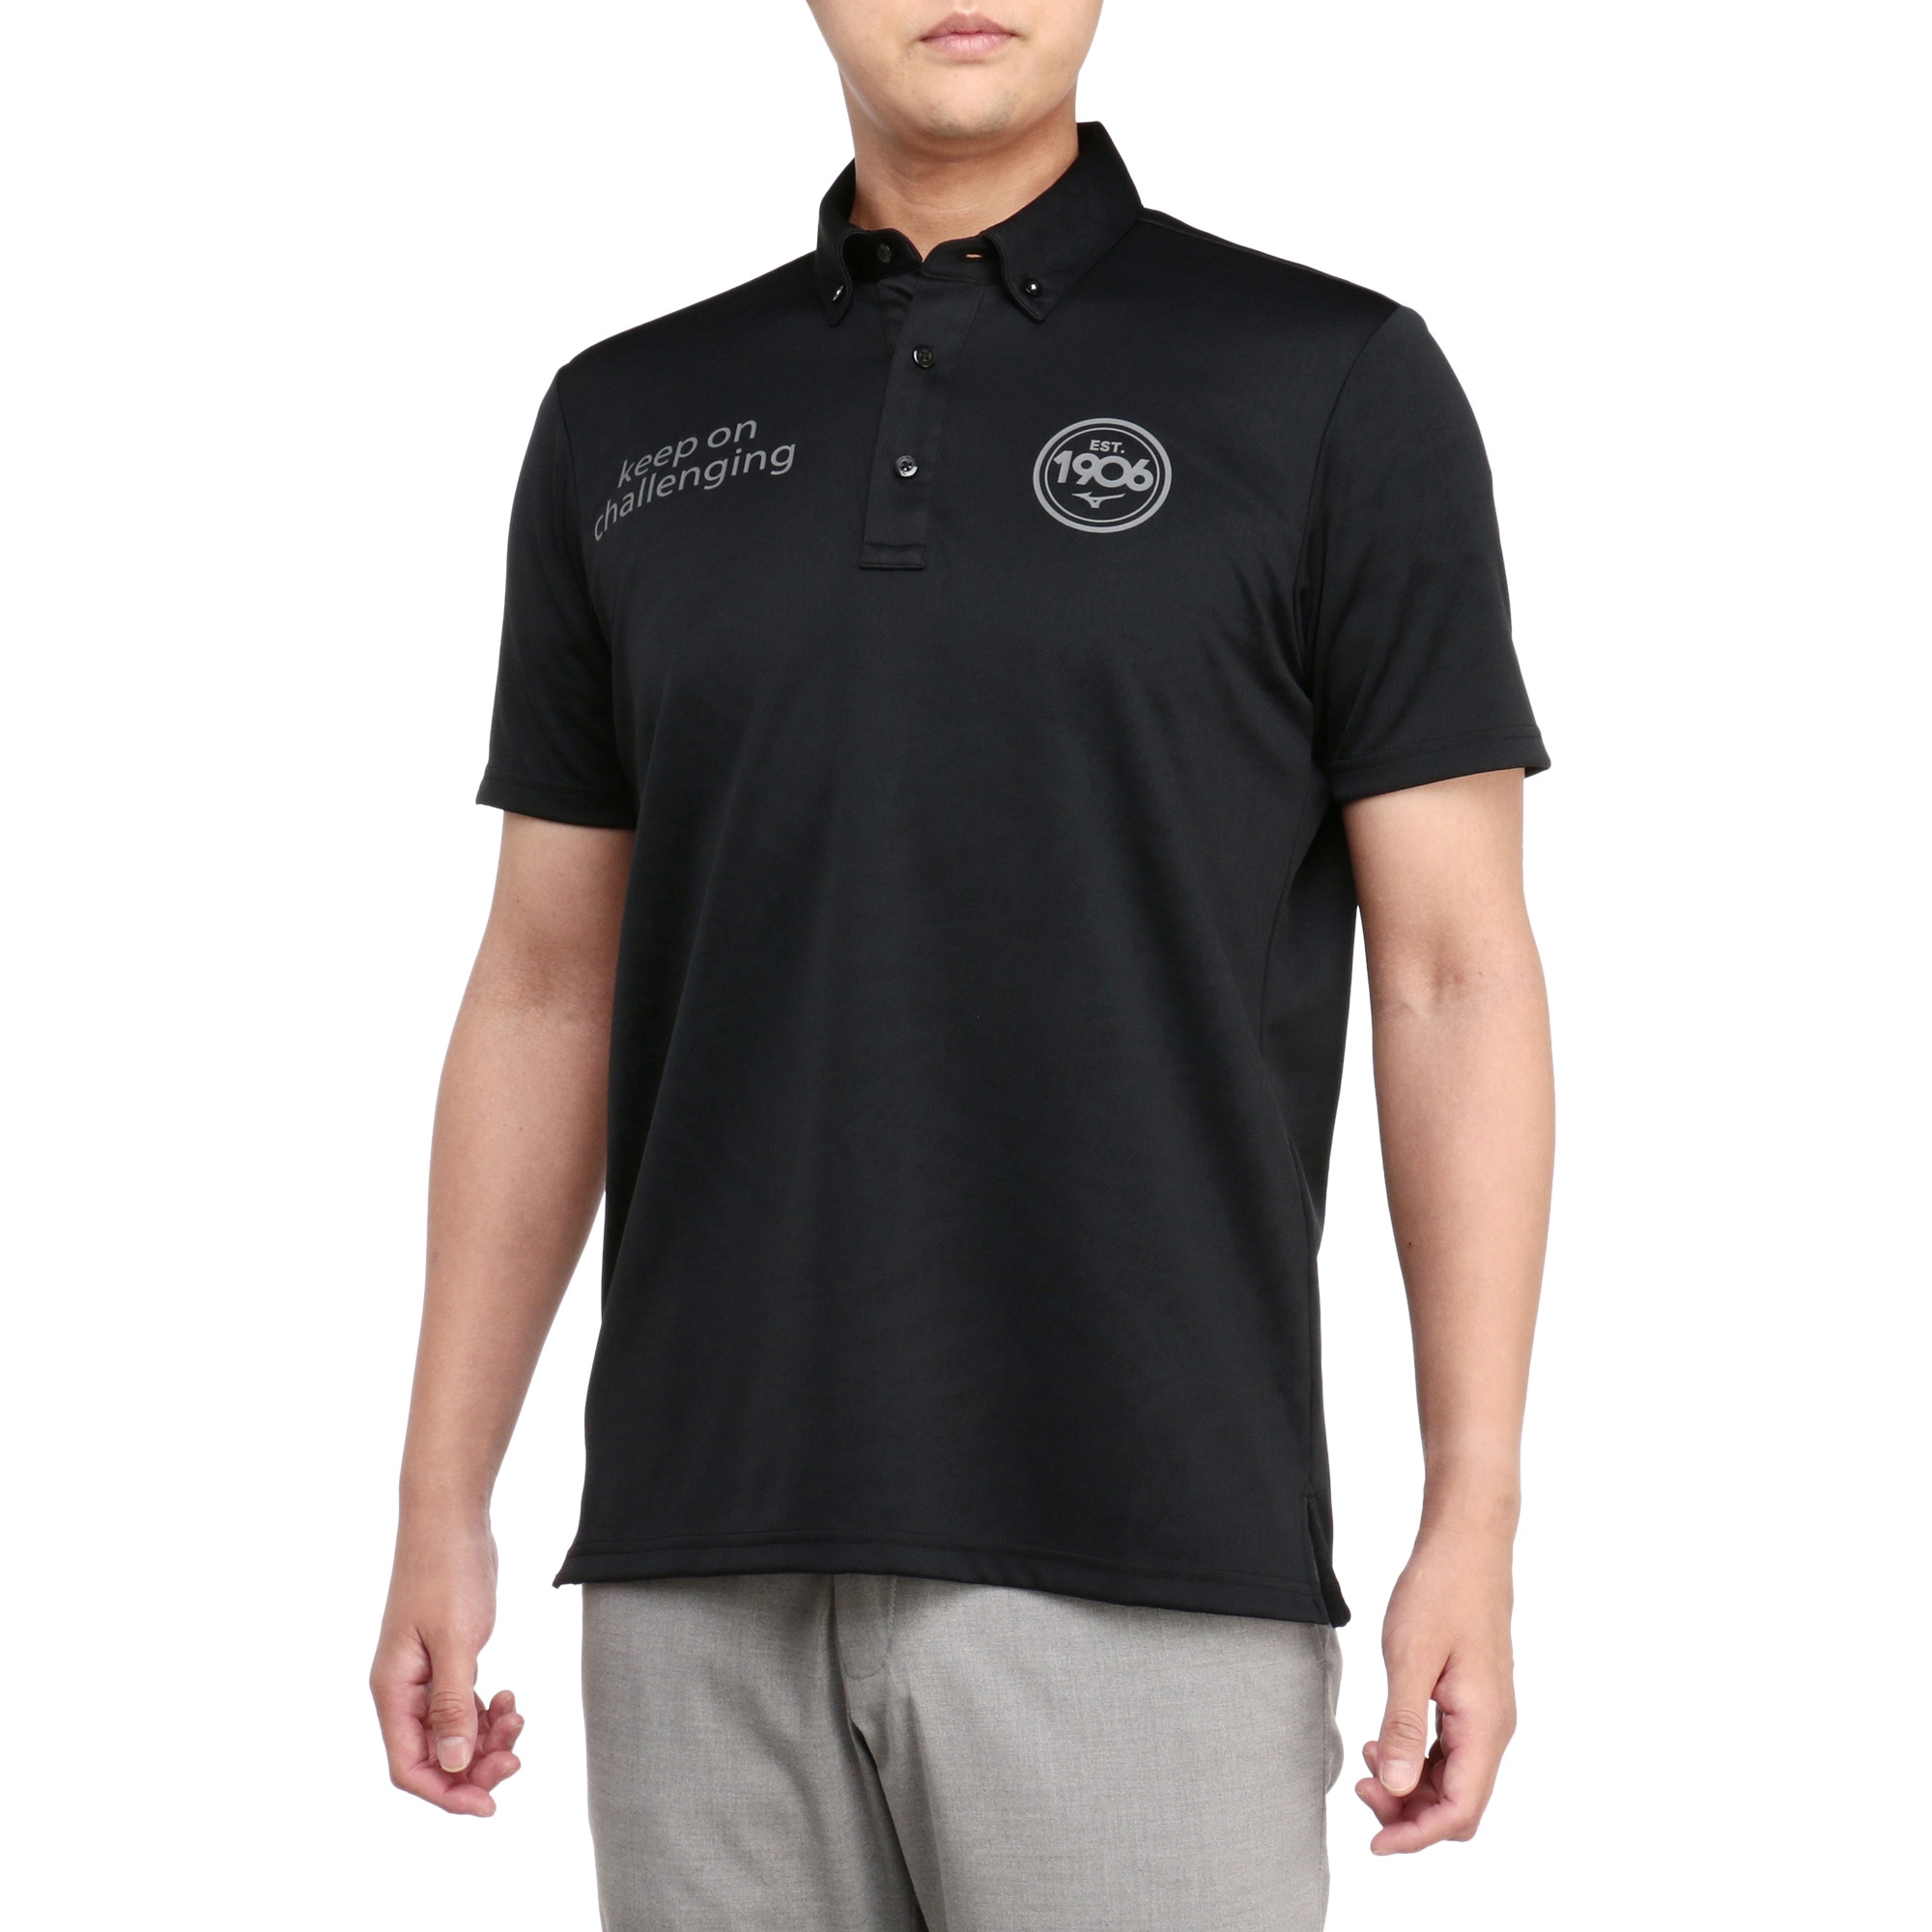 ダブルジャガード半袖ボタンダウンシャツ[メンズ]|E2MAA018|半袖シャツ